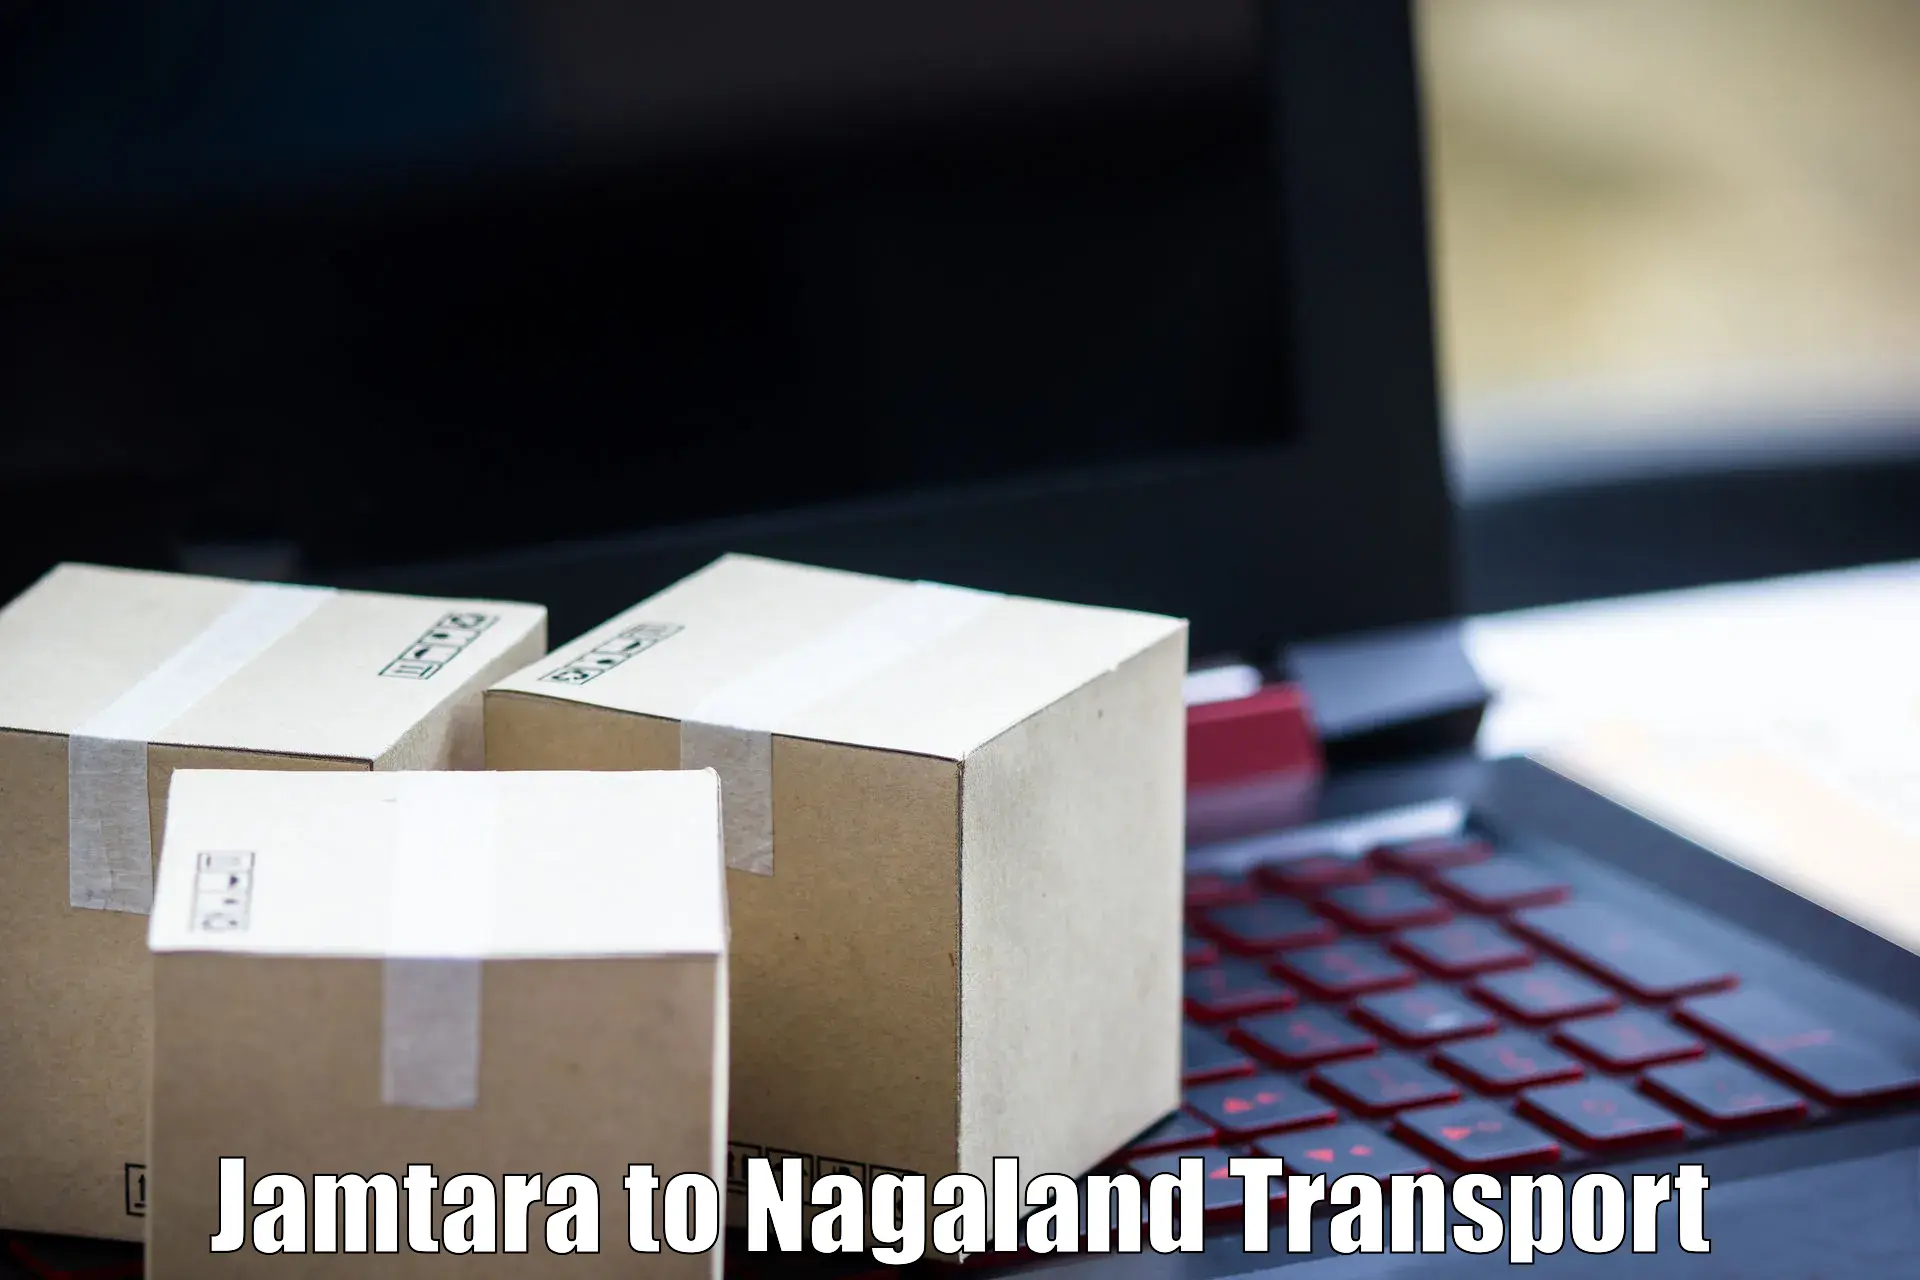 Online transport service Jamtara to Nagaland